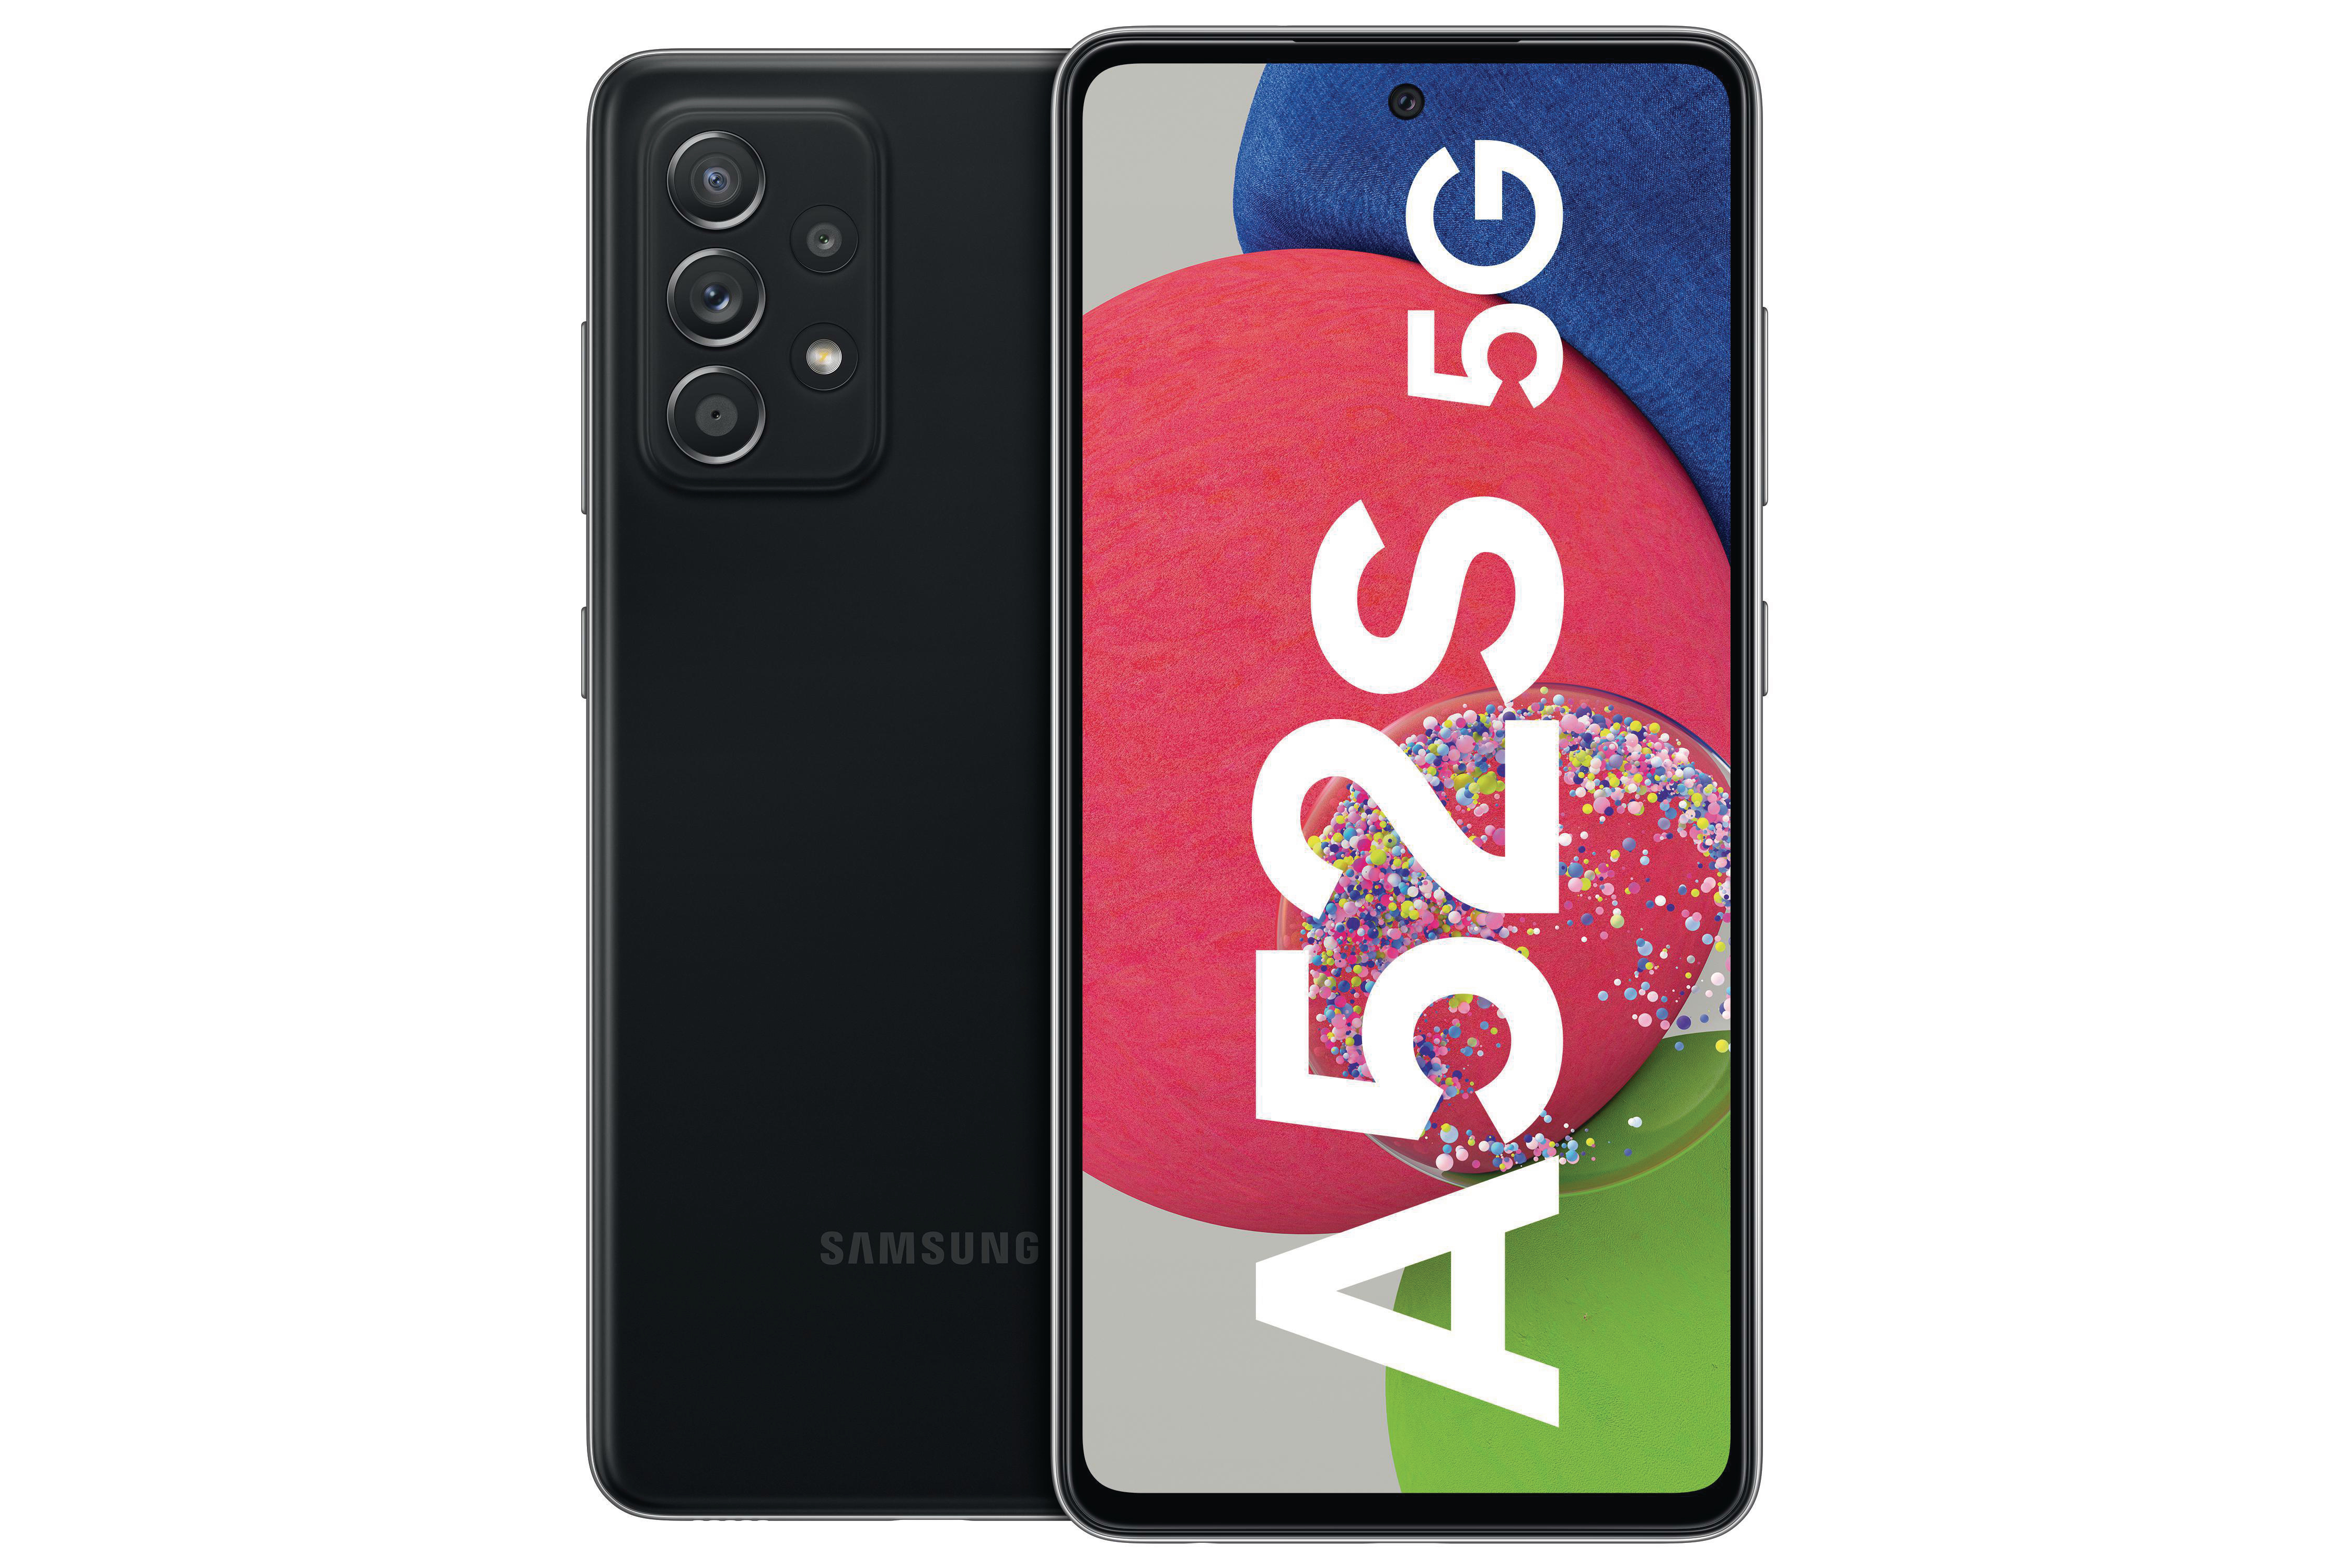 SIM Black Dual Galaxy 5G GB Awesome SAMSUNG A52s 256